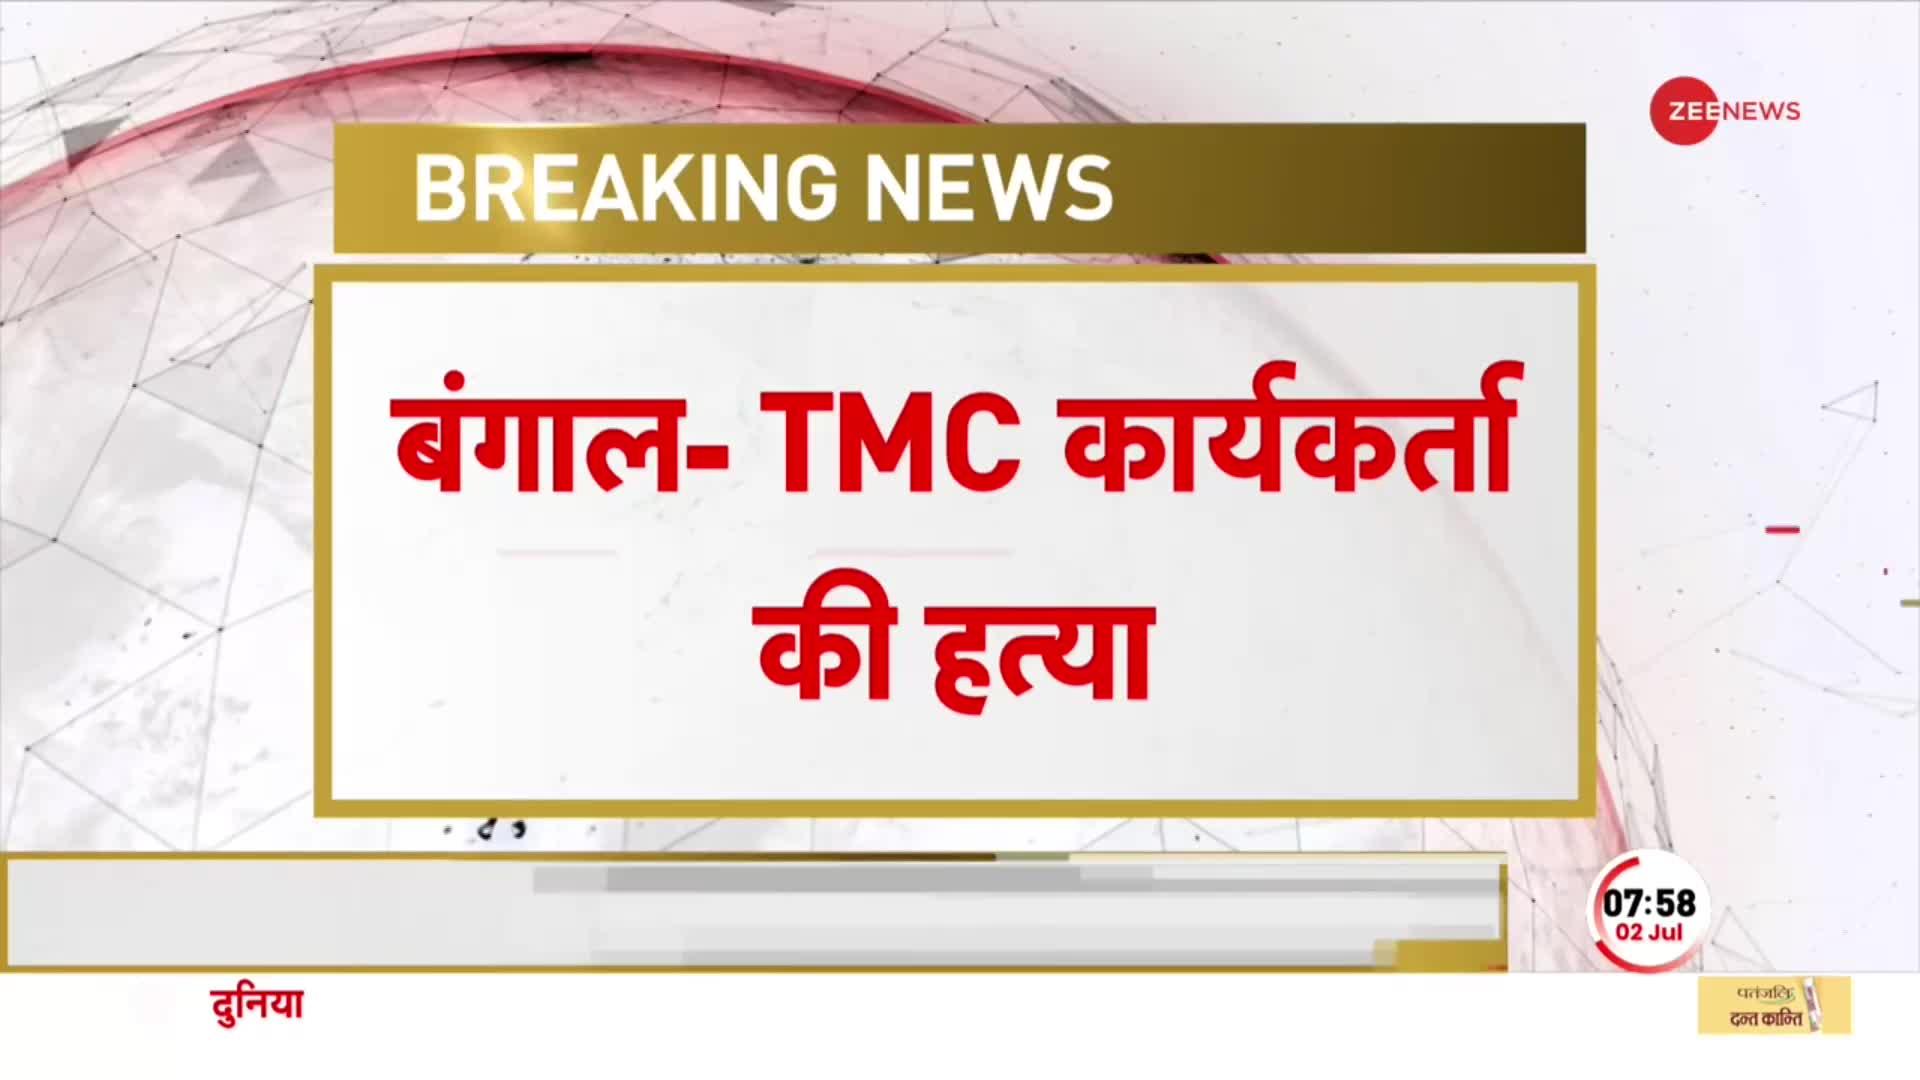 West Bengal: TMC कार्यकर्ता की गोली मारकर हत्या, इलाके में भारी पुलिस बल तैनात